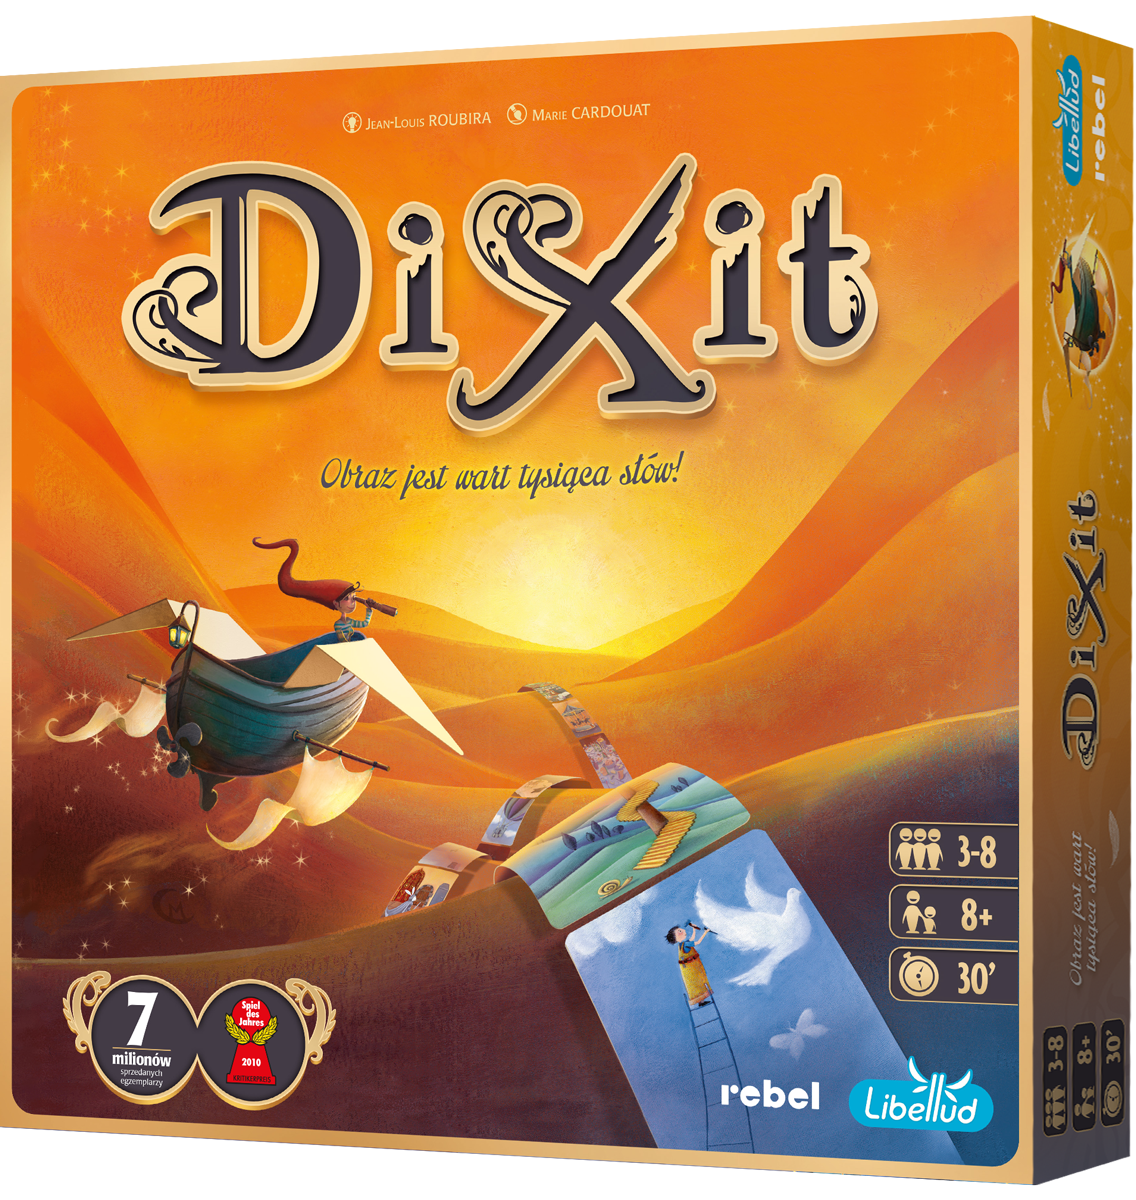 Dixit (nowa edycja)